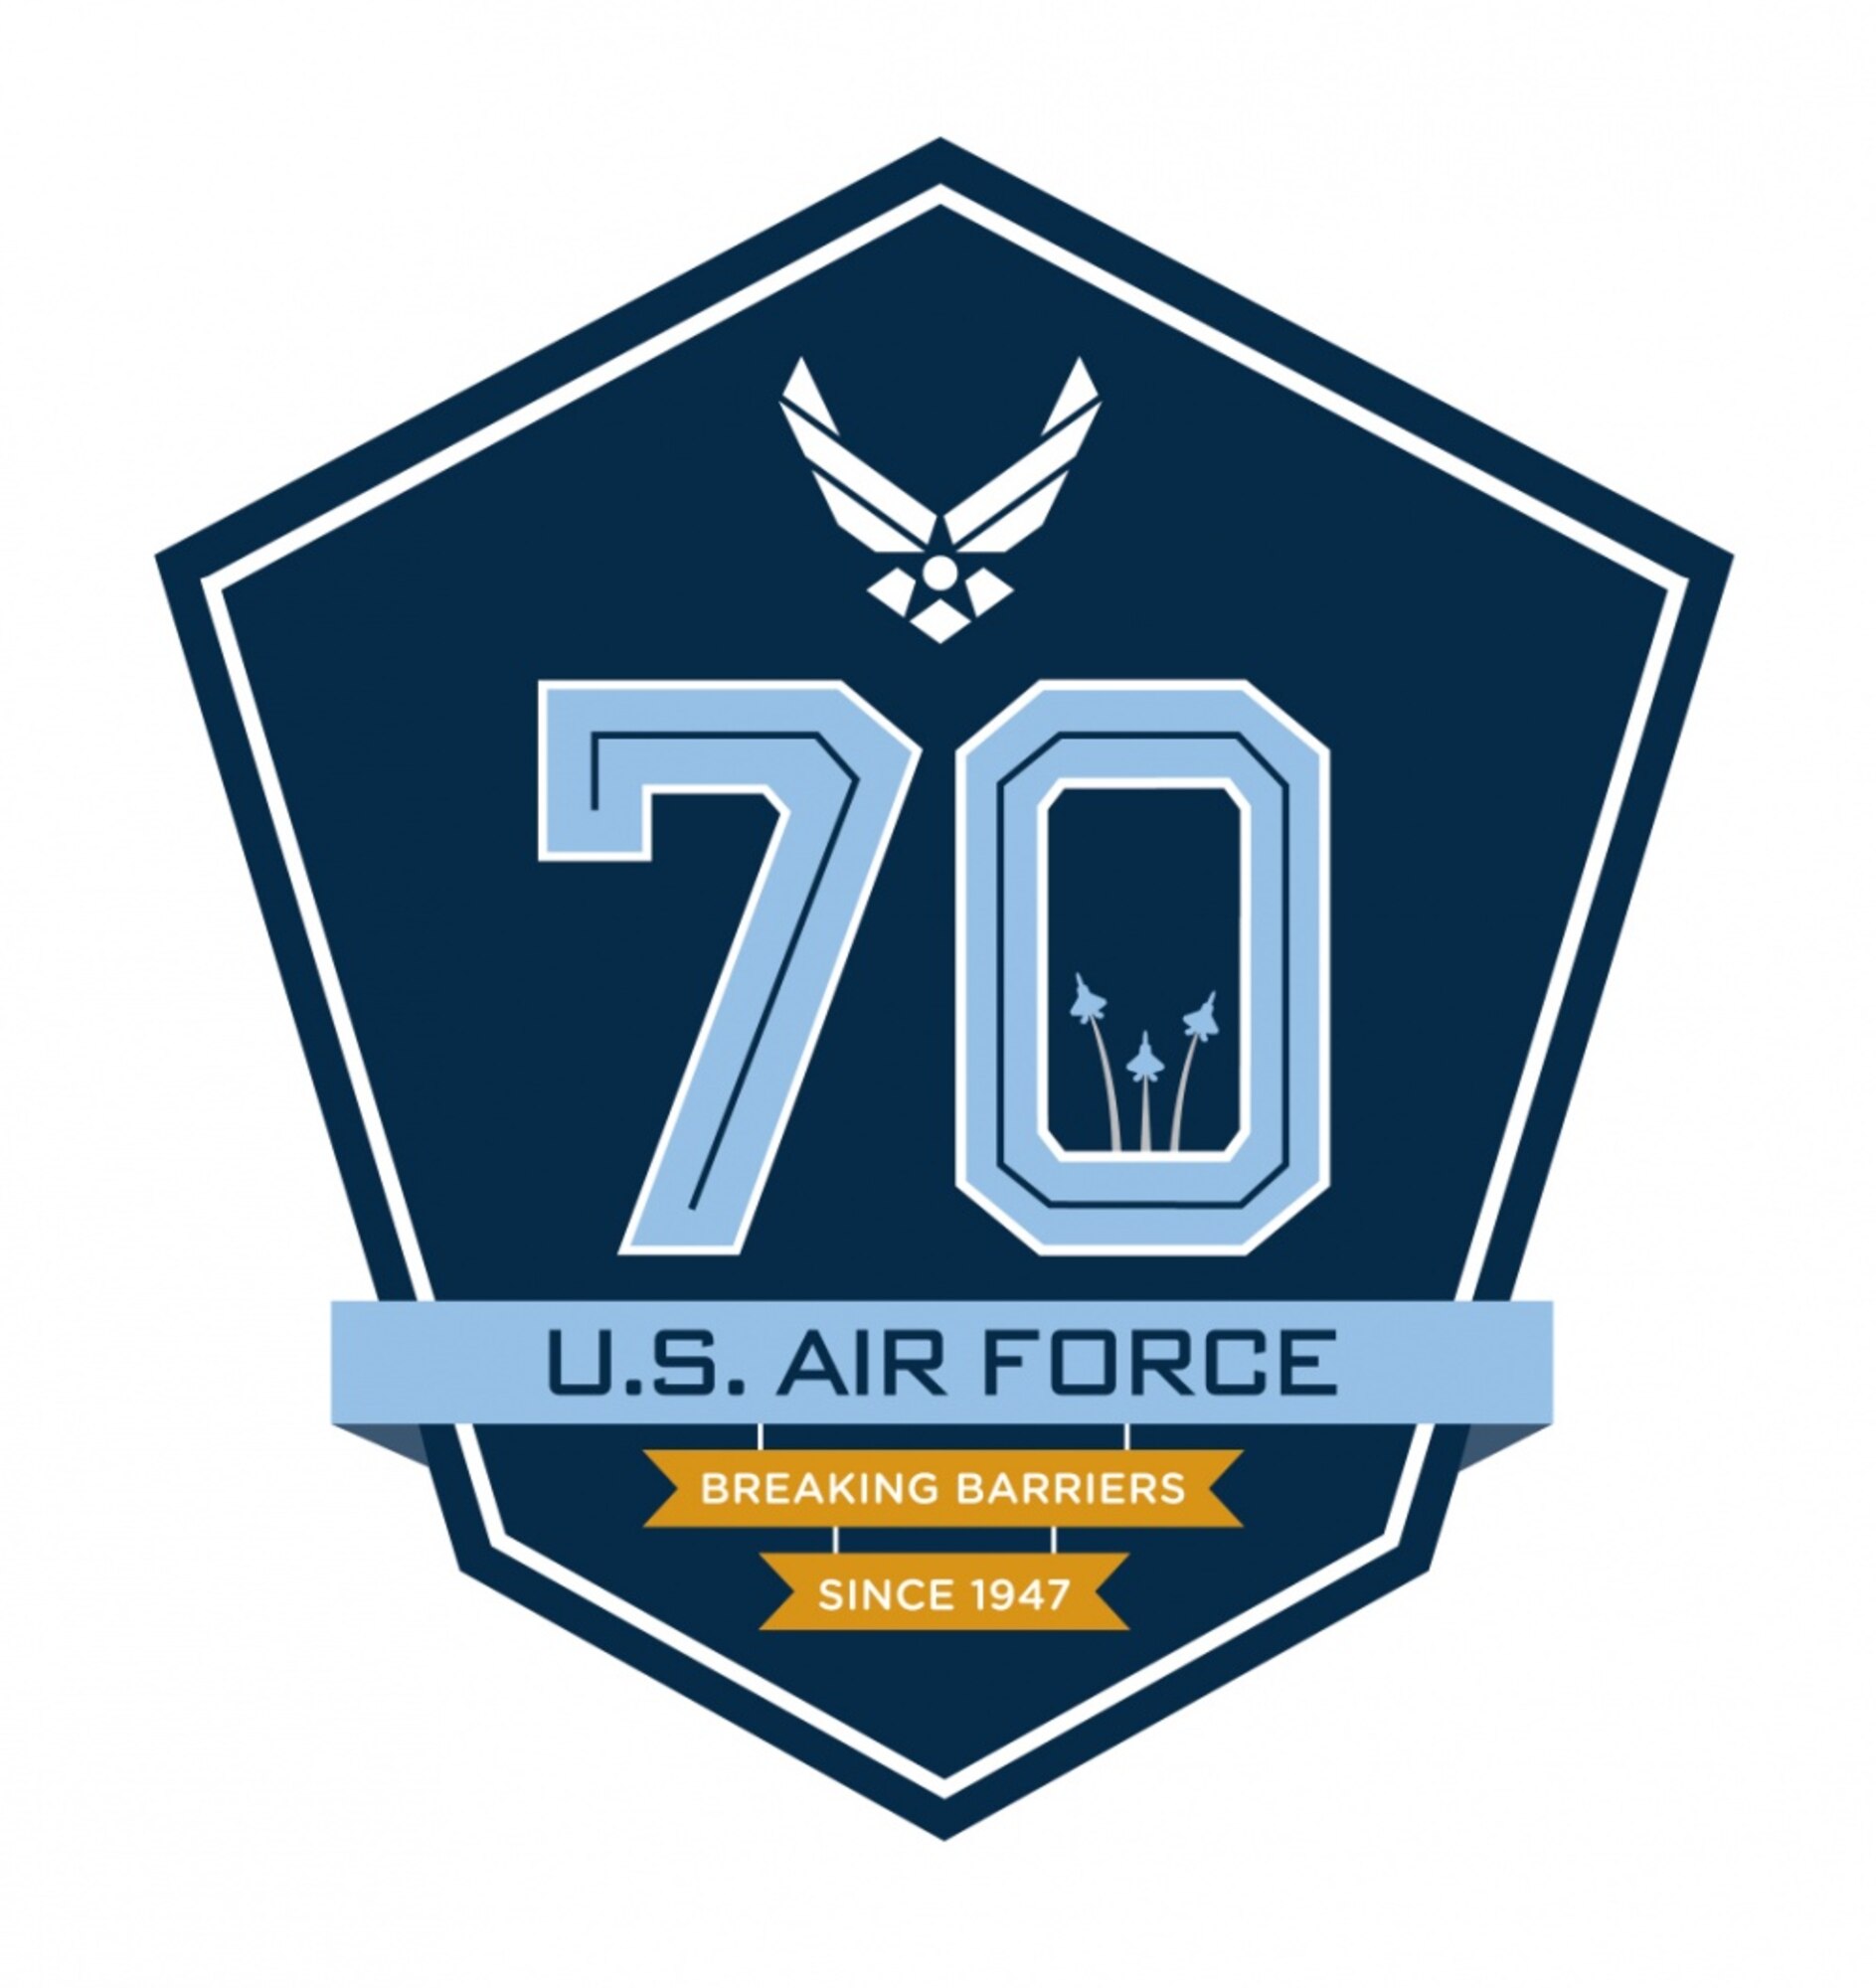 Air Force 70th logo